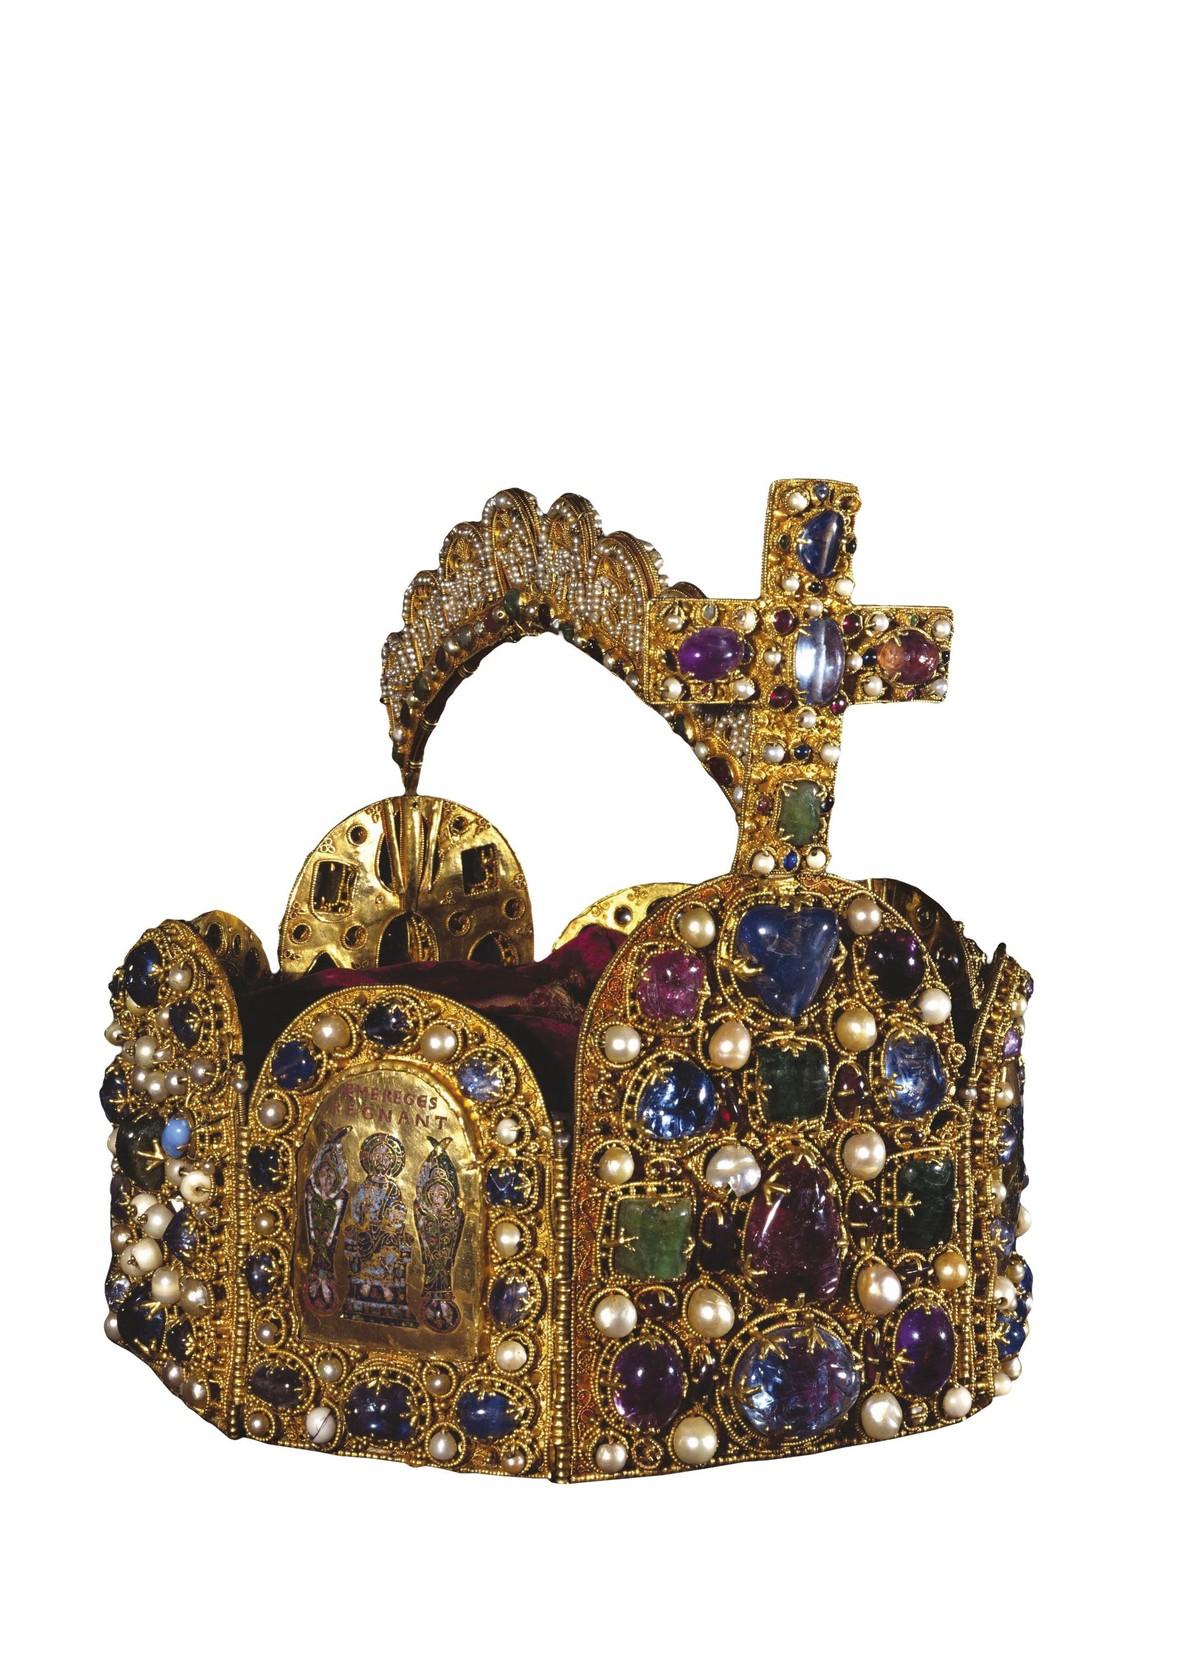 Les regalia, symboles du pouvoir des empereurs et rois de Germanie